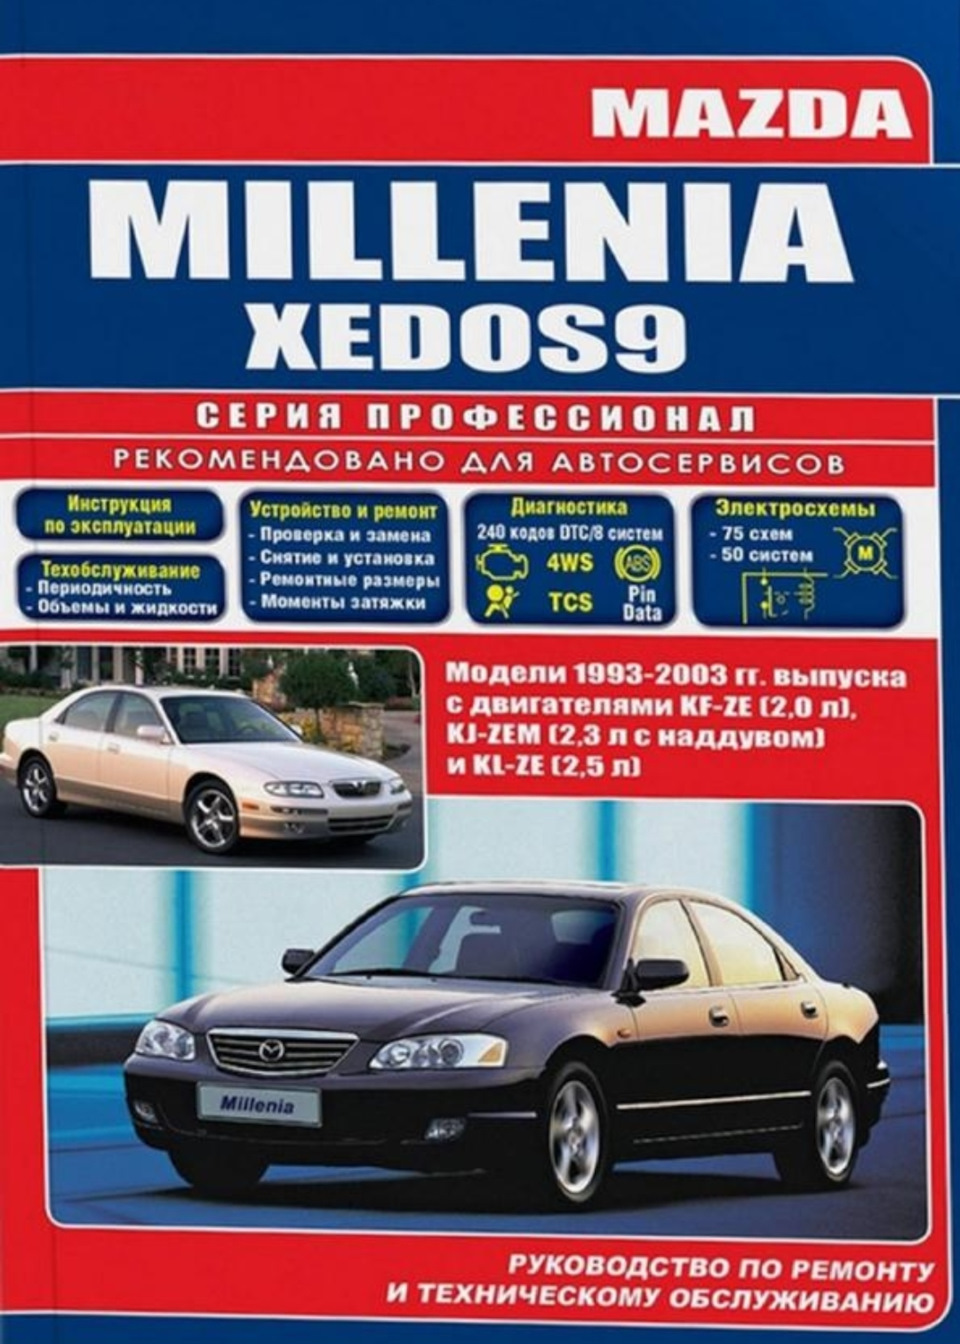 Книга mazda. Руководство по техническому обслуживанию и ремонту. Мануал Мазда Кседос 9 2.5. Автомобили 2003 года выпуска. Mazda Millenia авто ру.